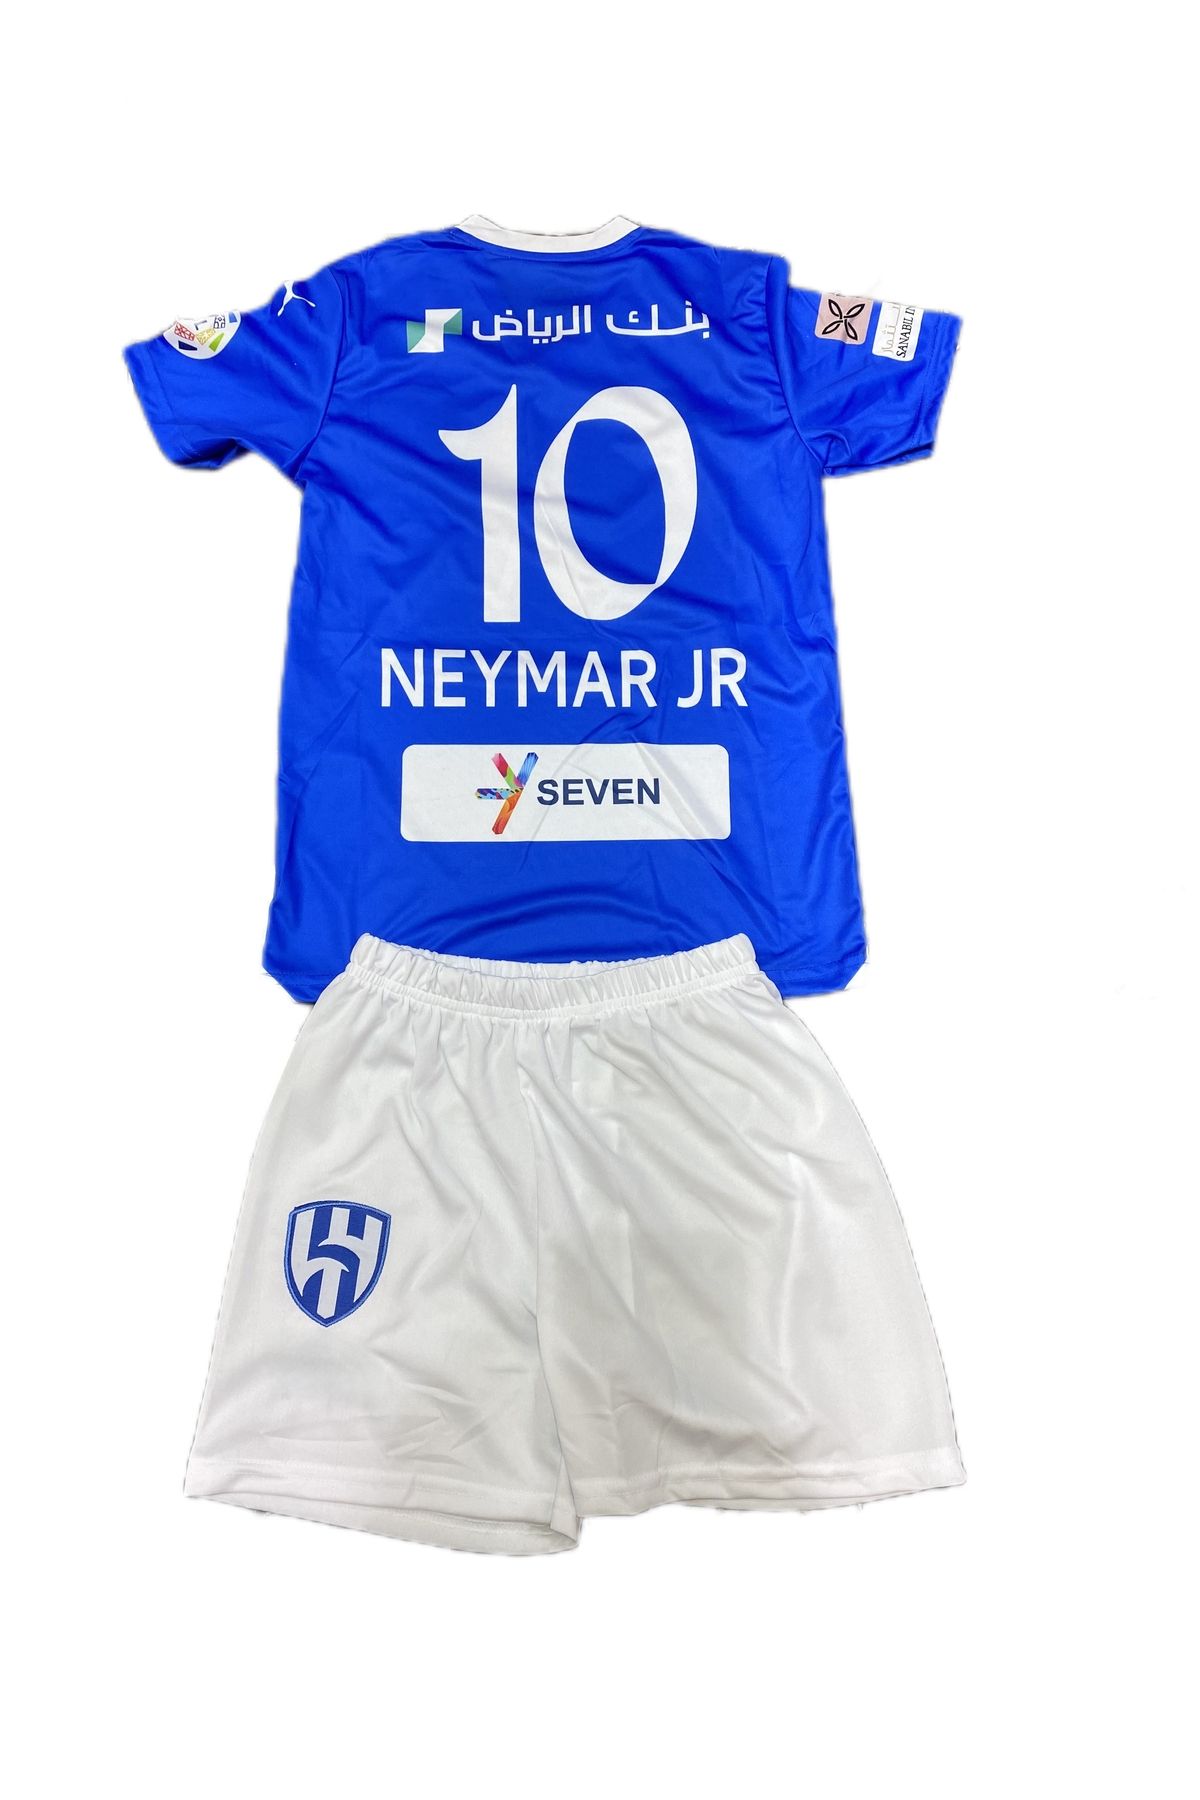 Suq giyim Yeni sezon Neymar jr AL Hilal çocuk forma